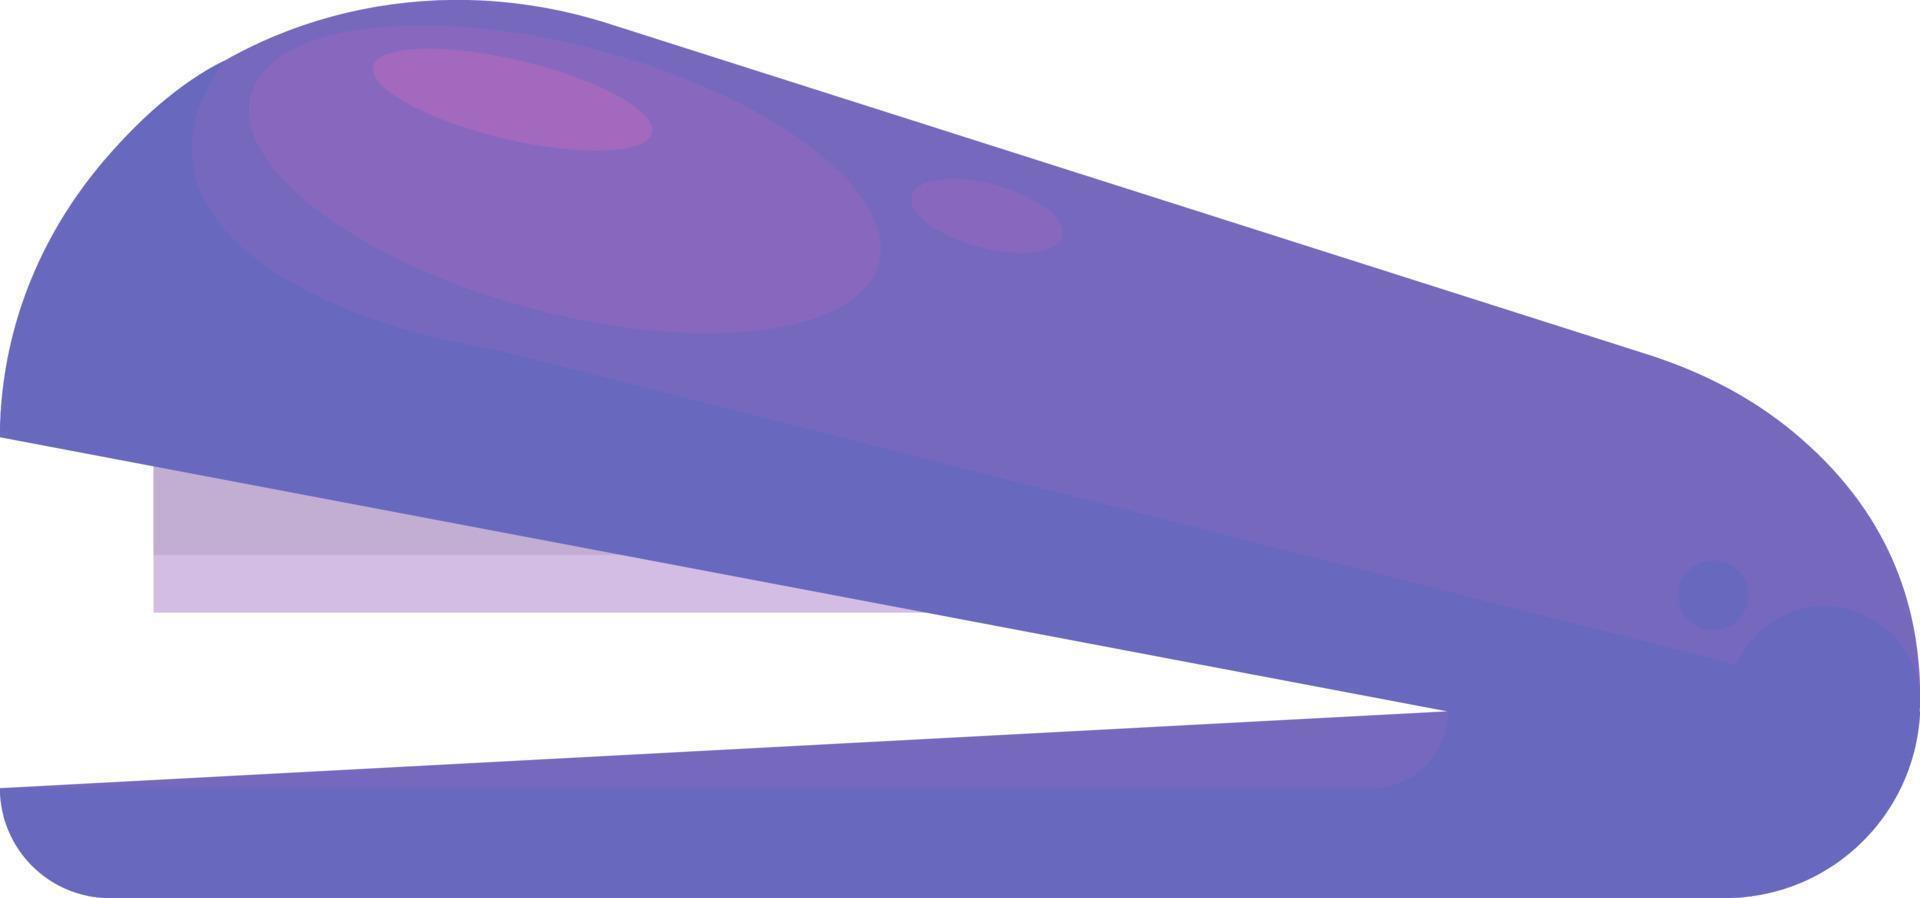 Purple stapler, illustration, vector on white background